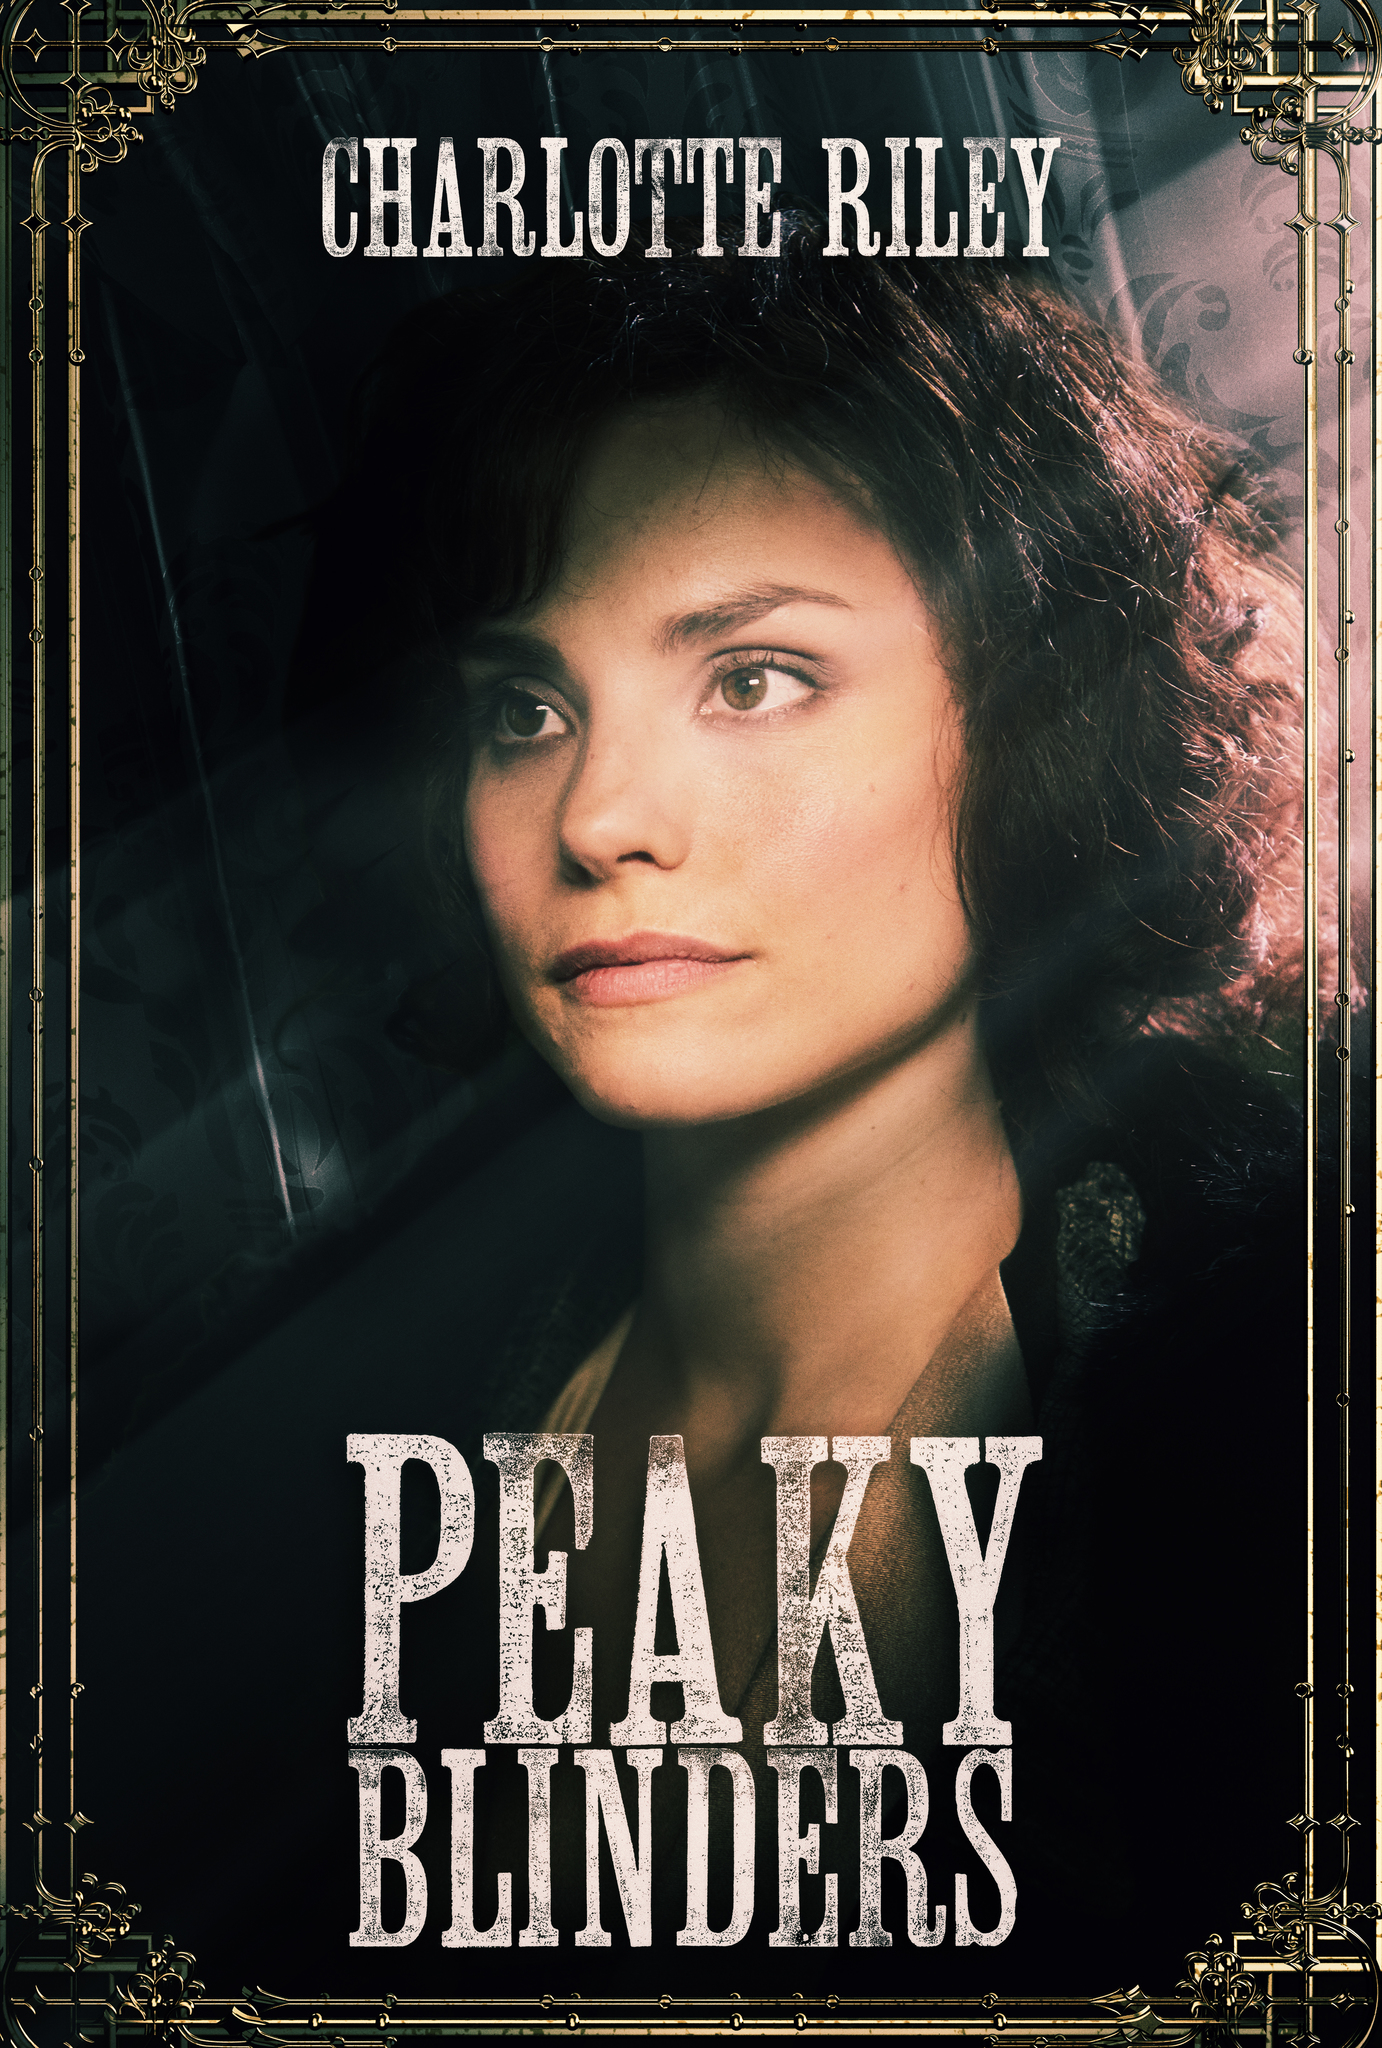 Charlotte Riley in Peaky Blinders (2013)